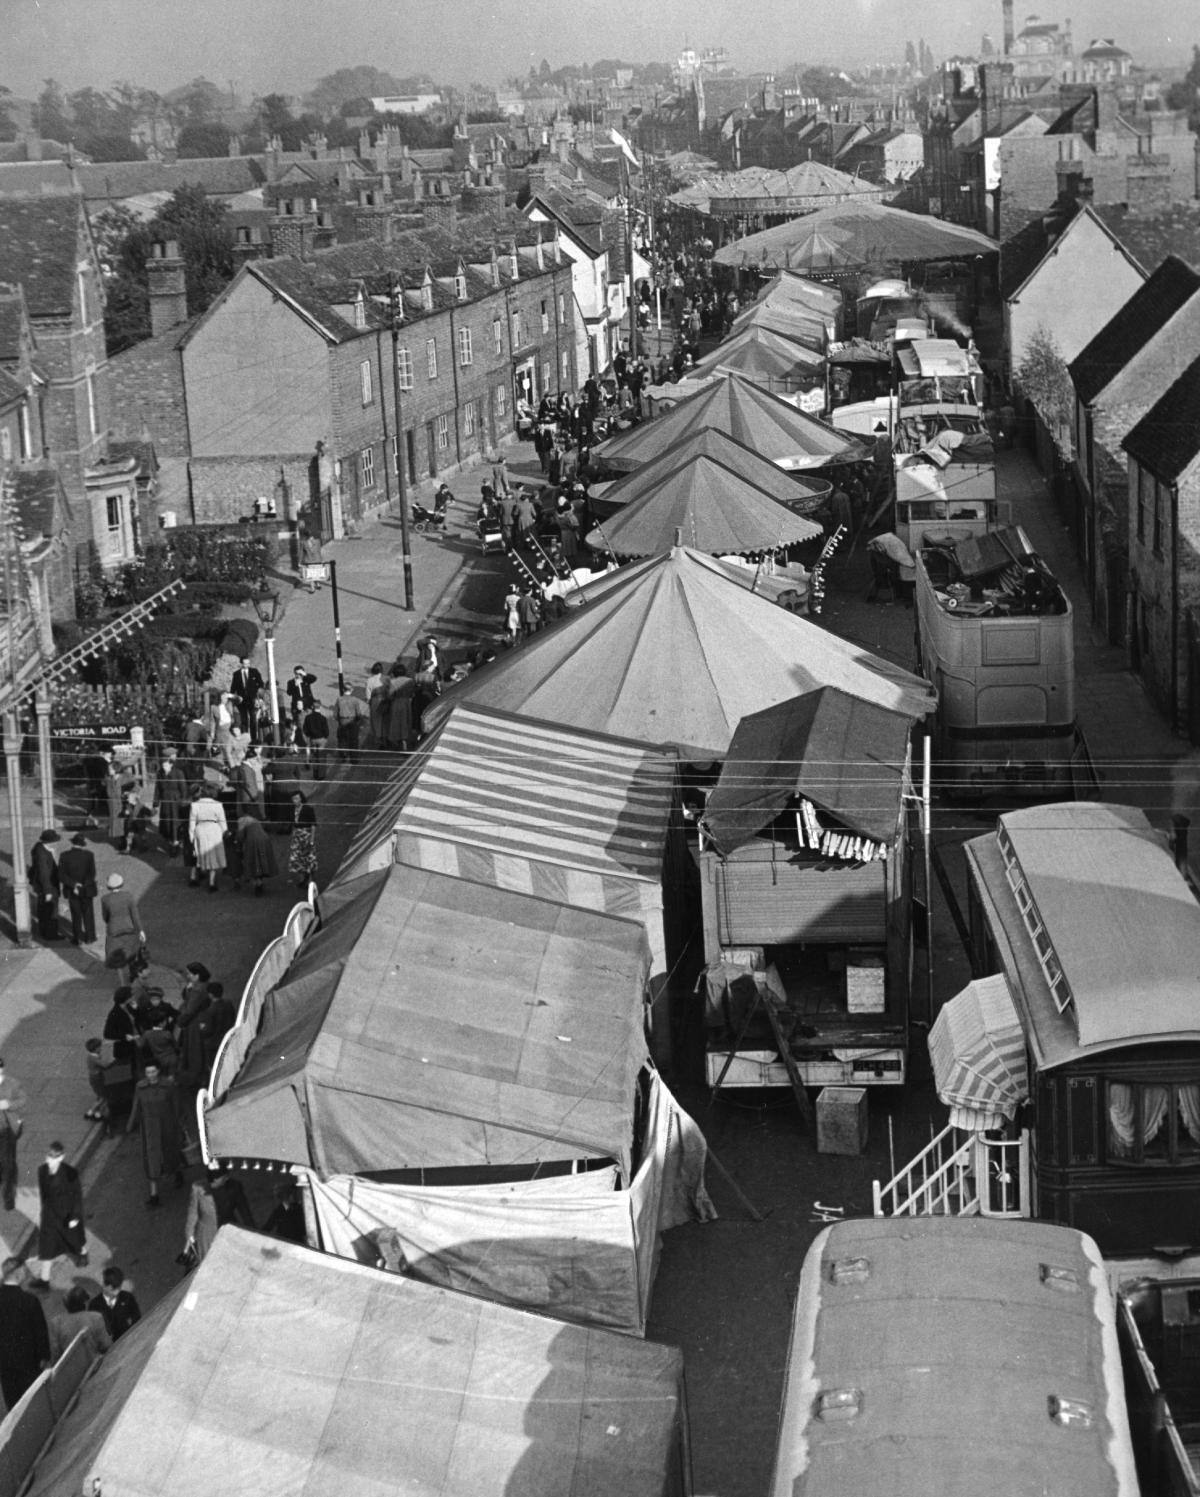 Abingdon Fair, 1954